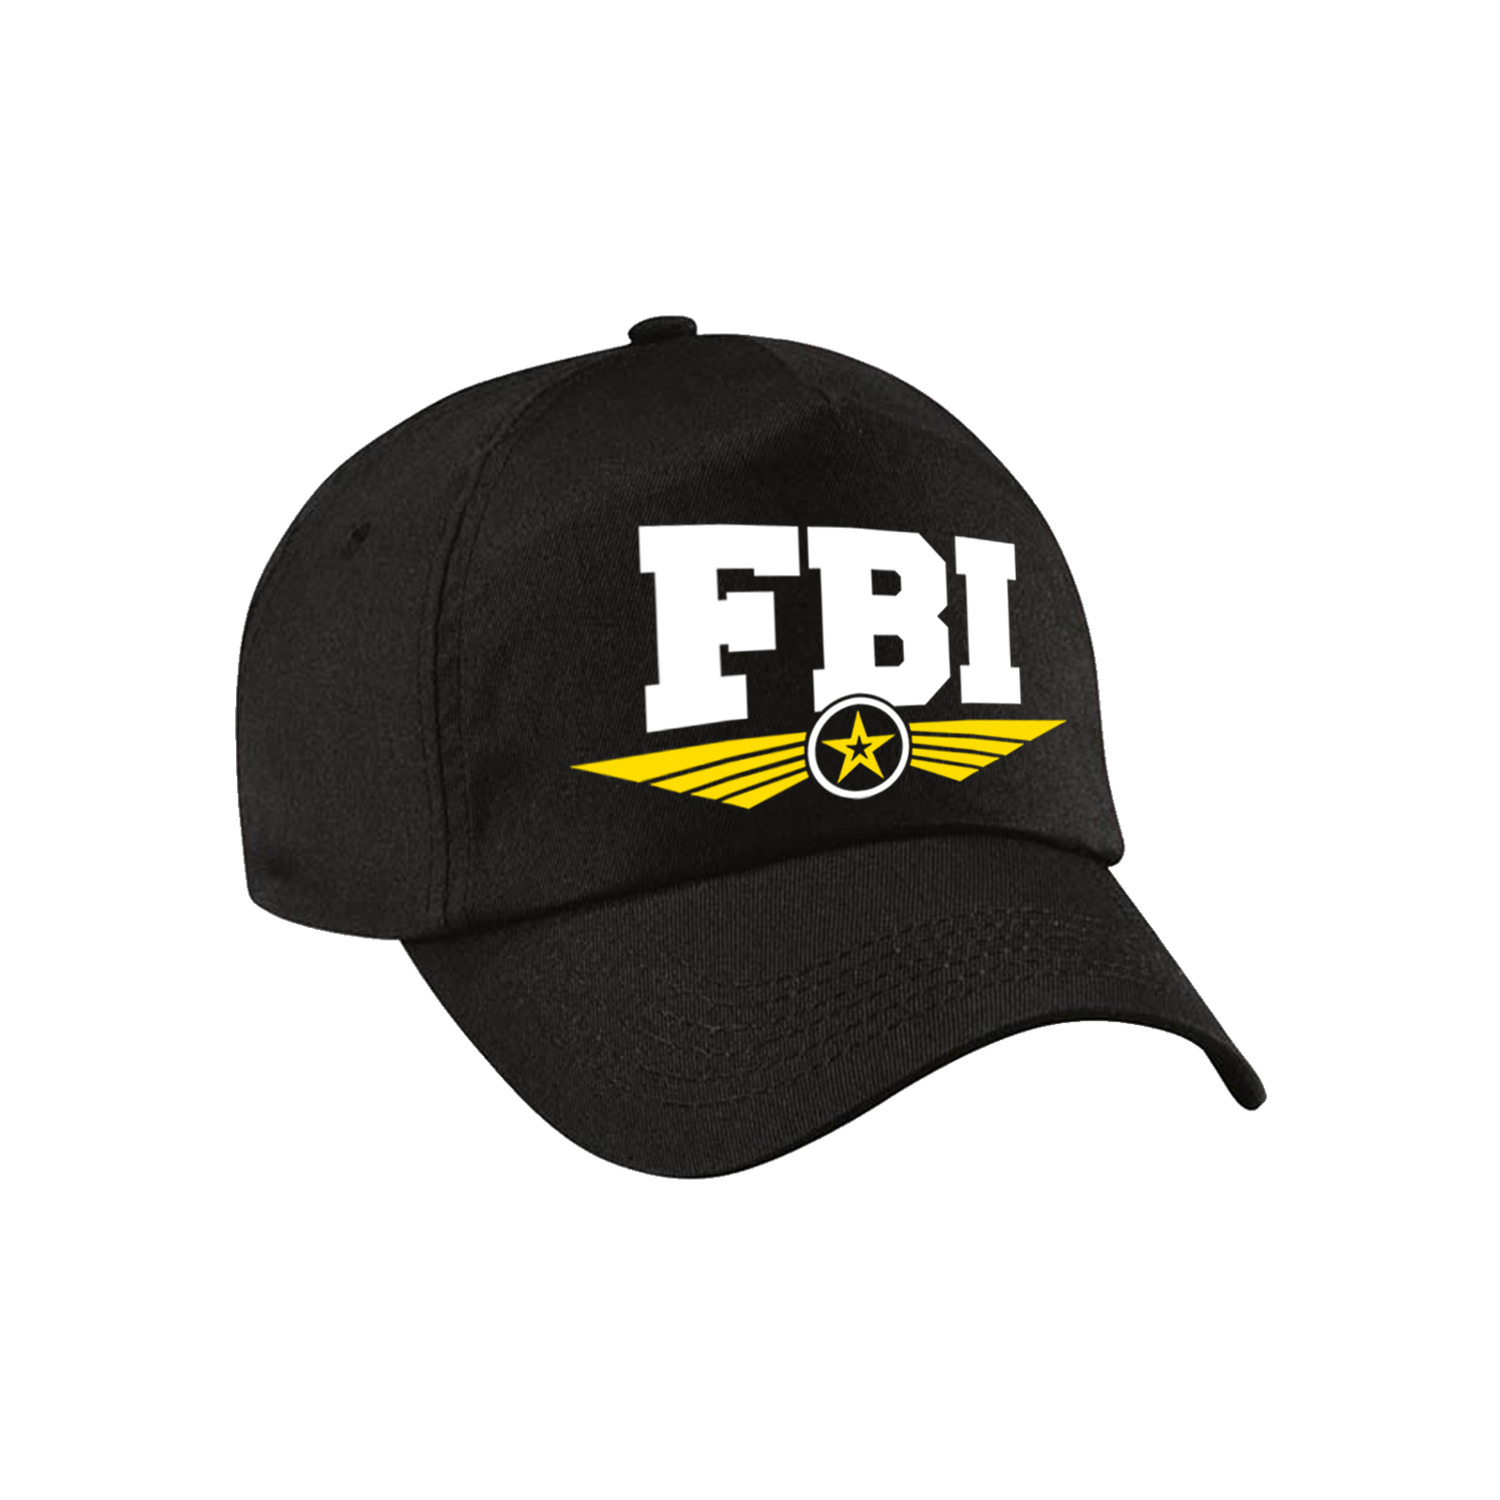 FBI agent tekst pet-baseball cap zwart voor kinderen